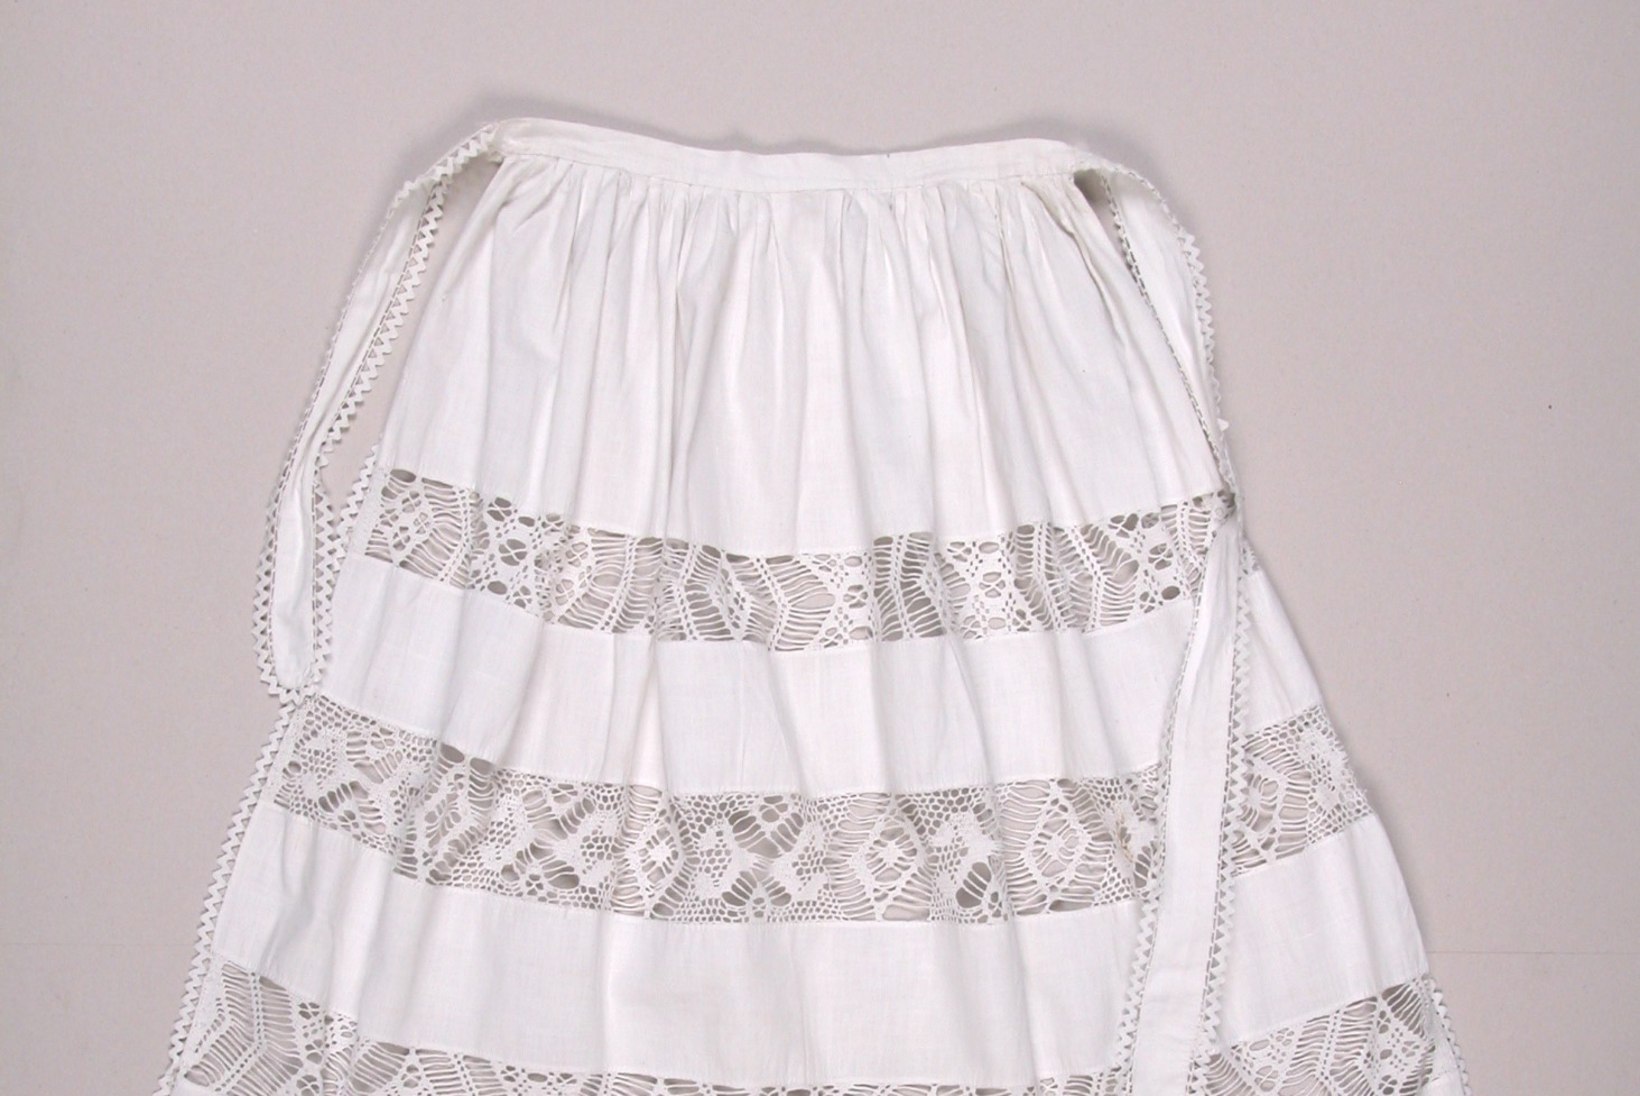 LAULU- JA TANTSUPIDU | Põllega rõivakomplekti kandmisel järgi vanu traditsioone!